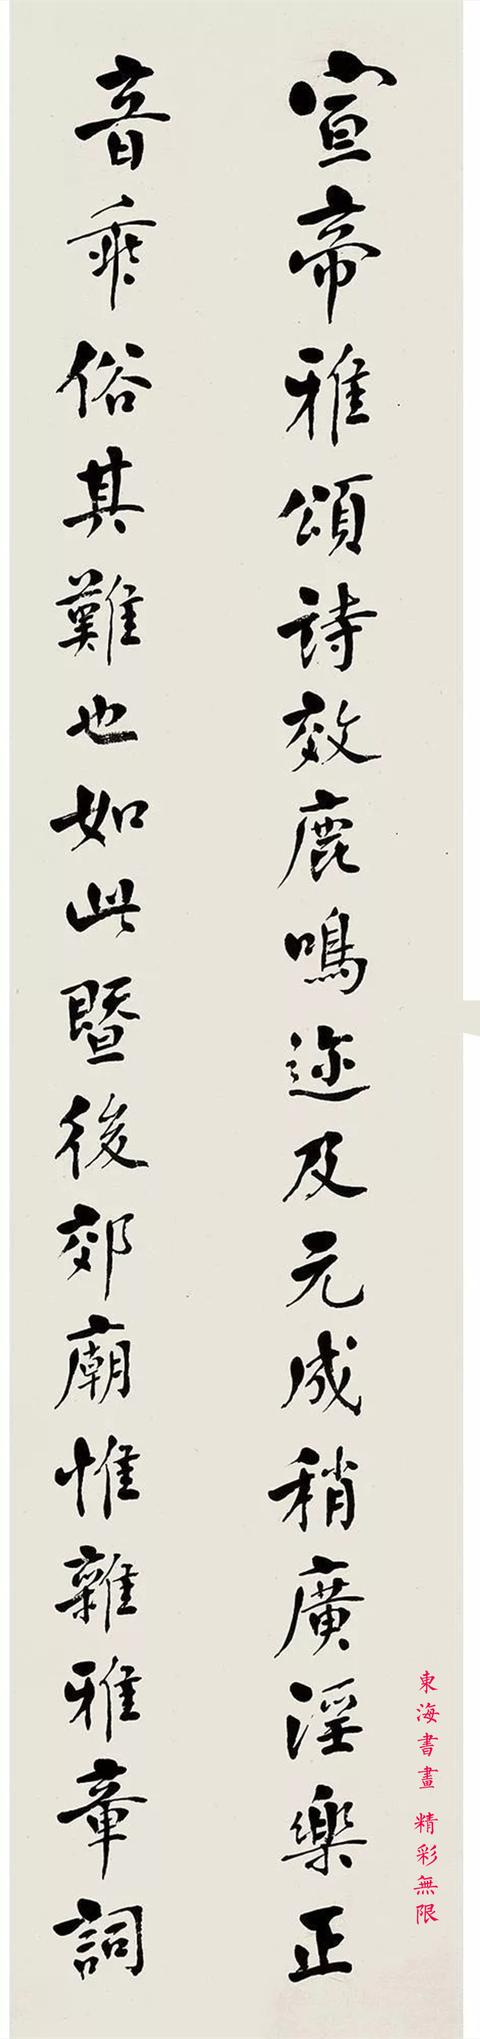 吴道镕 1933年作 行书 四屏镜片